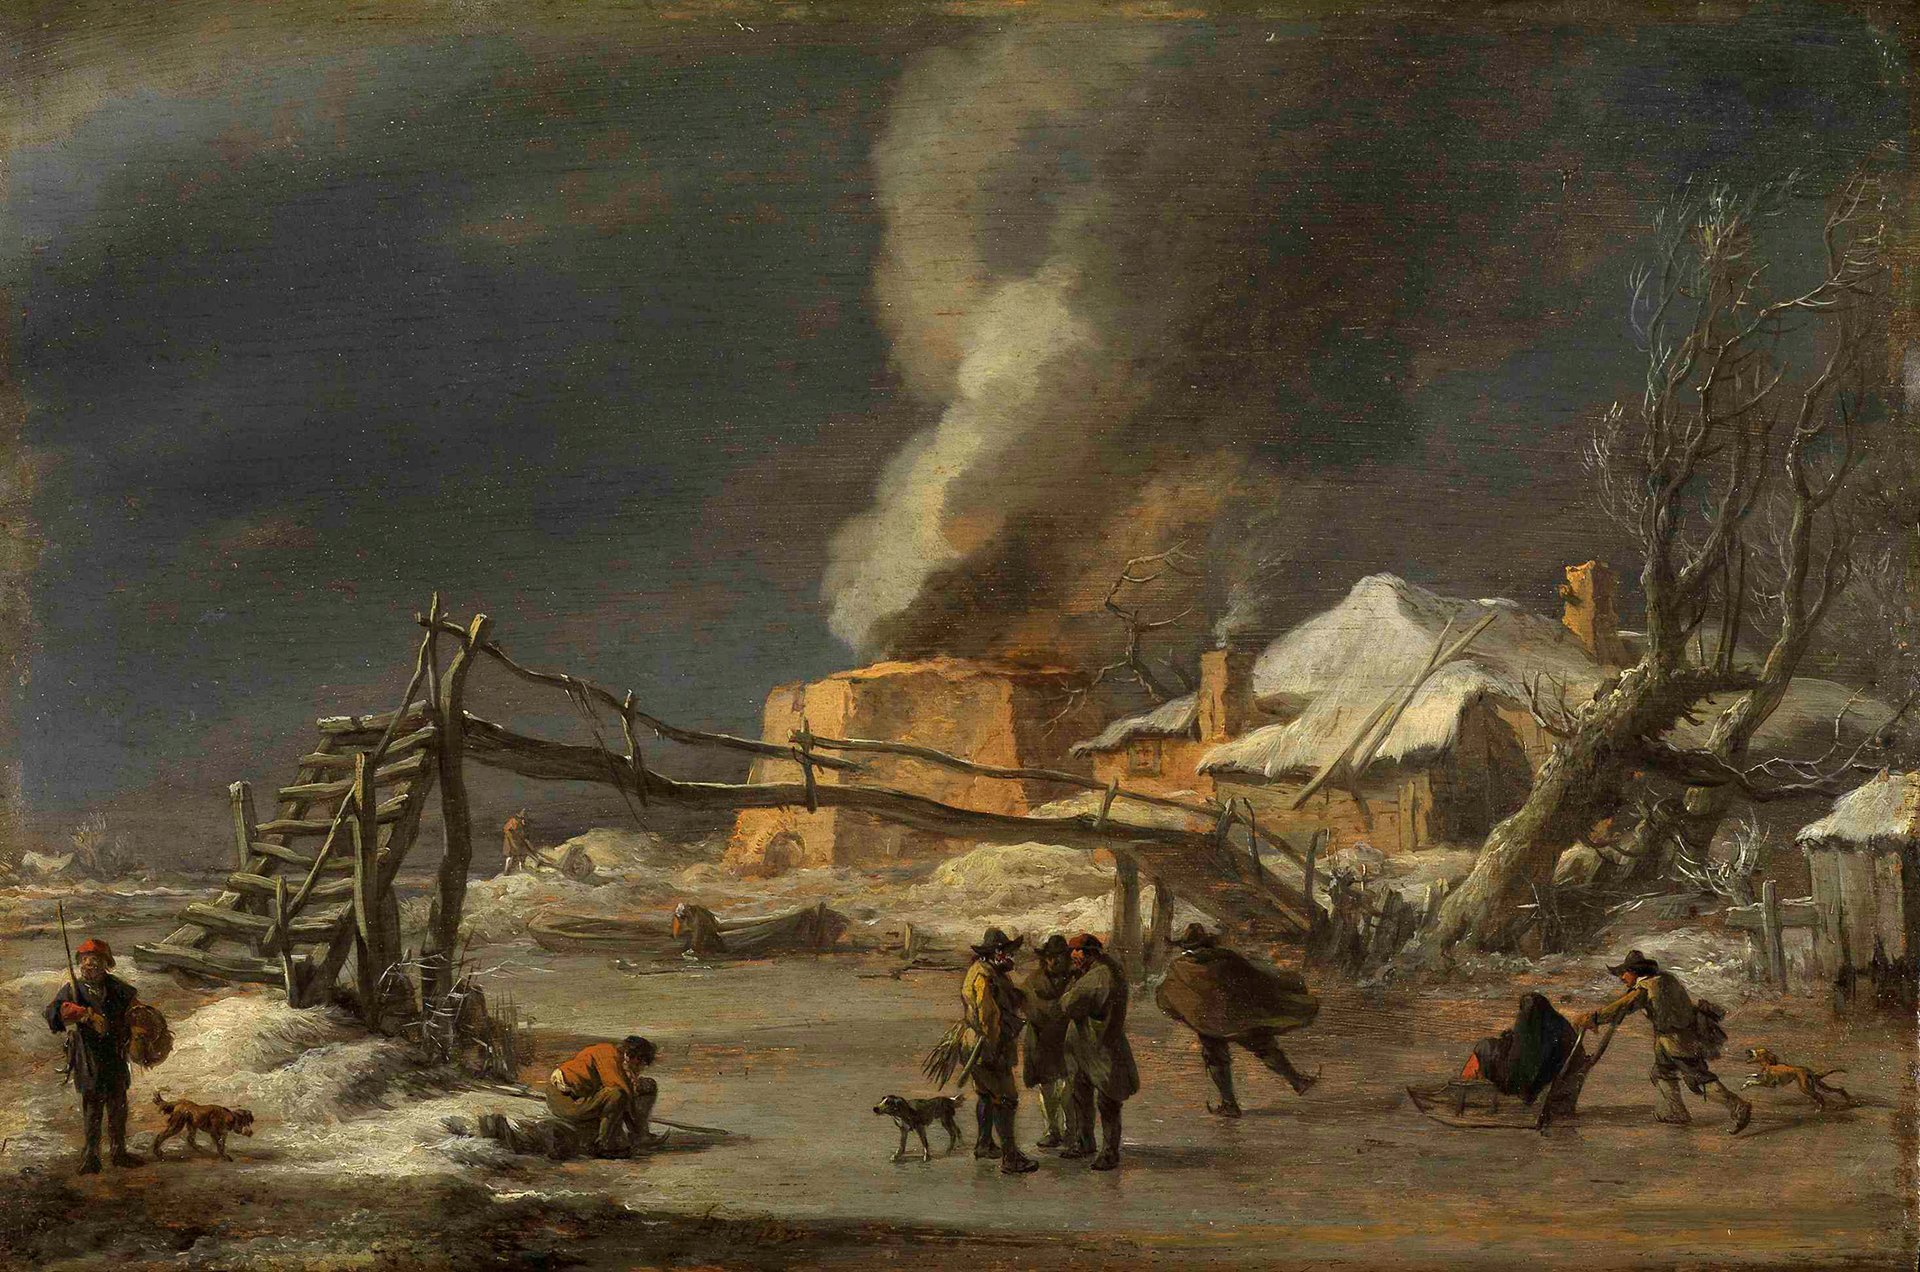 Abbildung des Werks "Winterlandschaft mit Kalkofen" von Nicolaes Berchem aus dem Jahr 1665/70. Es zeigt eine Winterlandschaft und eine Häusergruppe. Aus einem großen Ofen strömt Rauch.